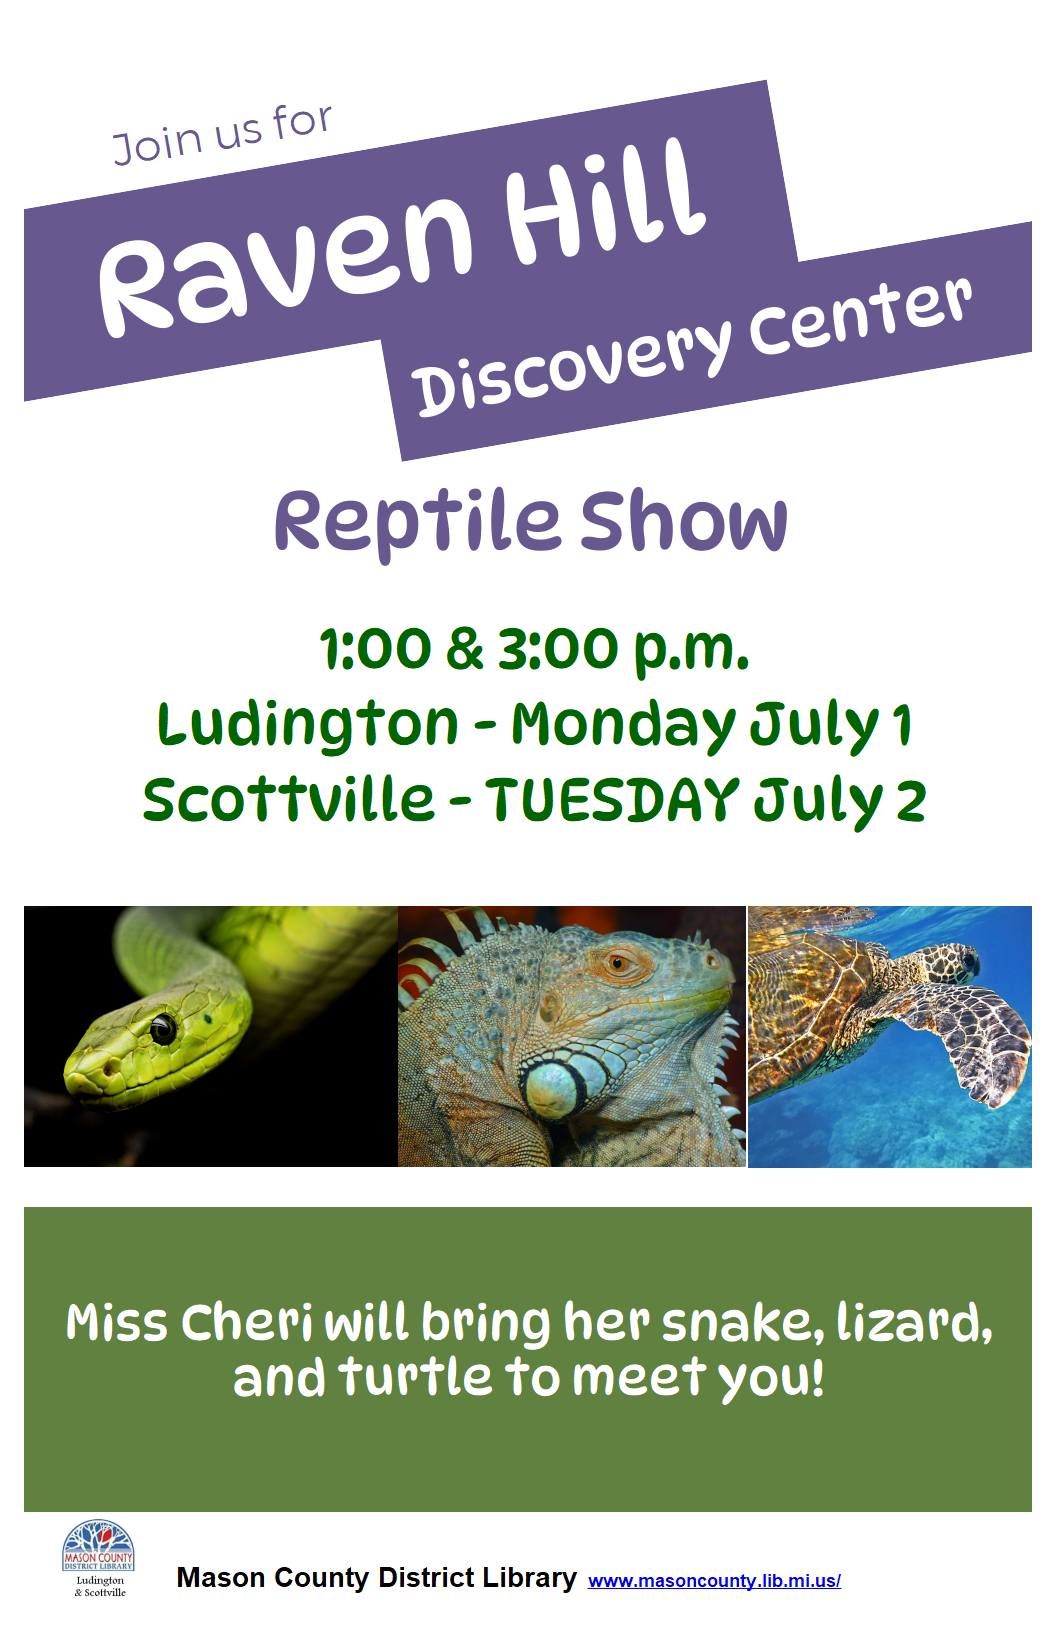 Reptile Show in Ludington, 1 p.m. & 3 p.m.